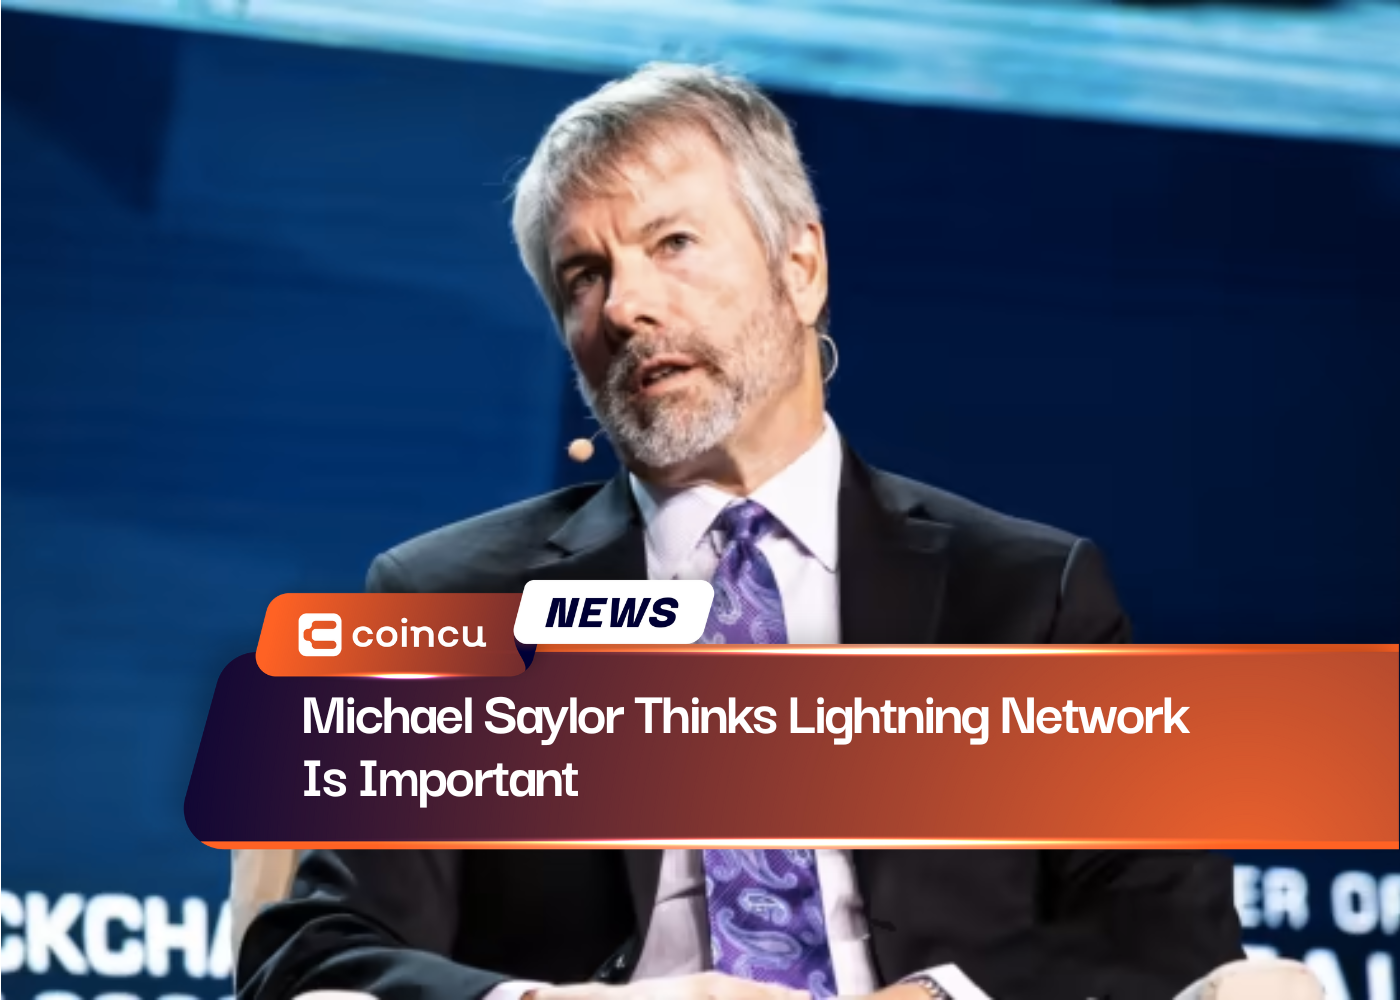 Michael Saylor, Lightning Network'ün Önemli Olduğunu Düşünüyor